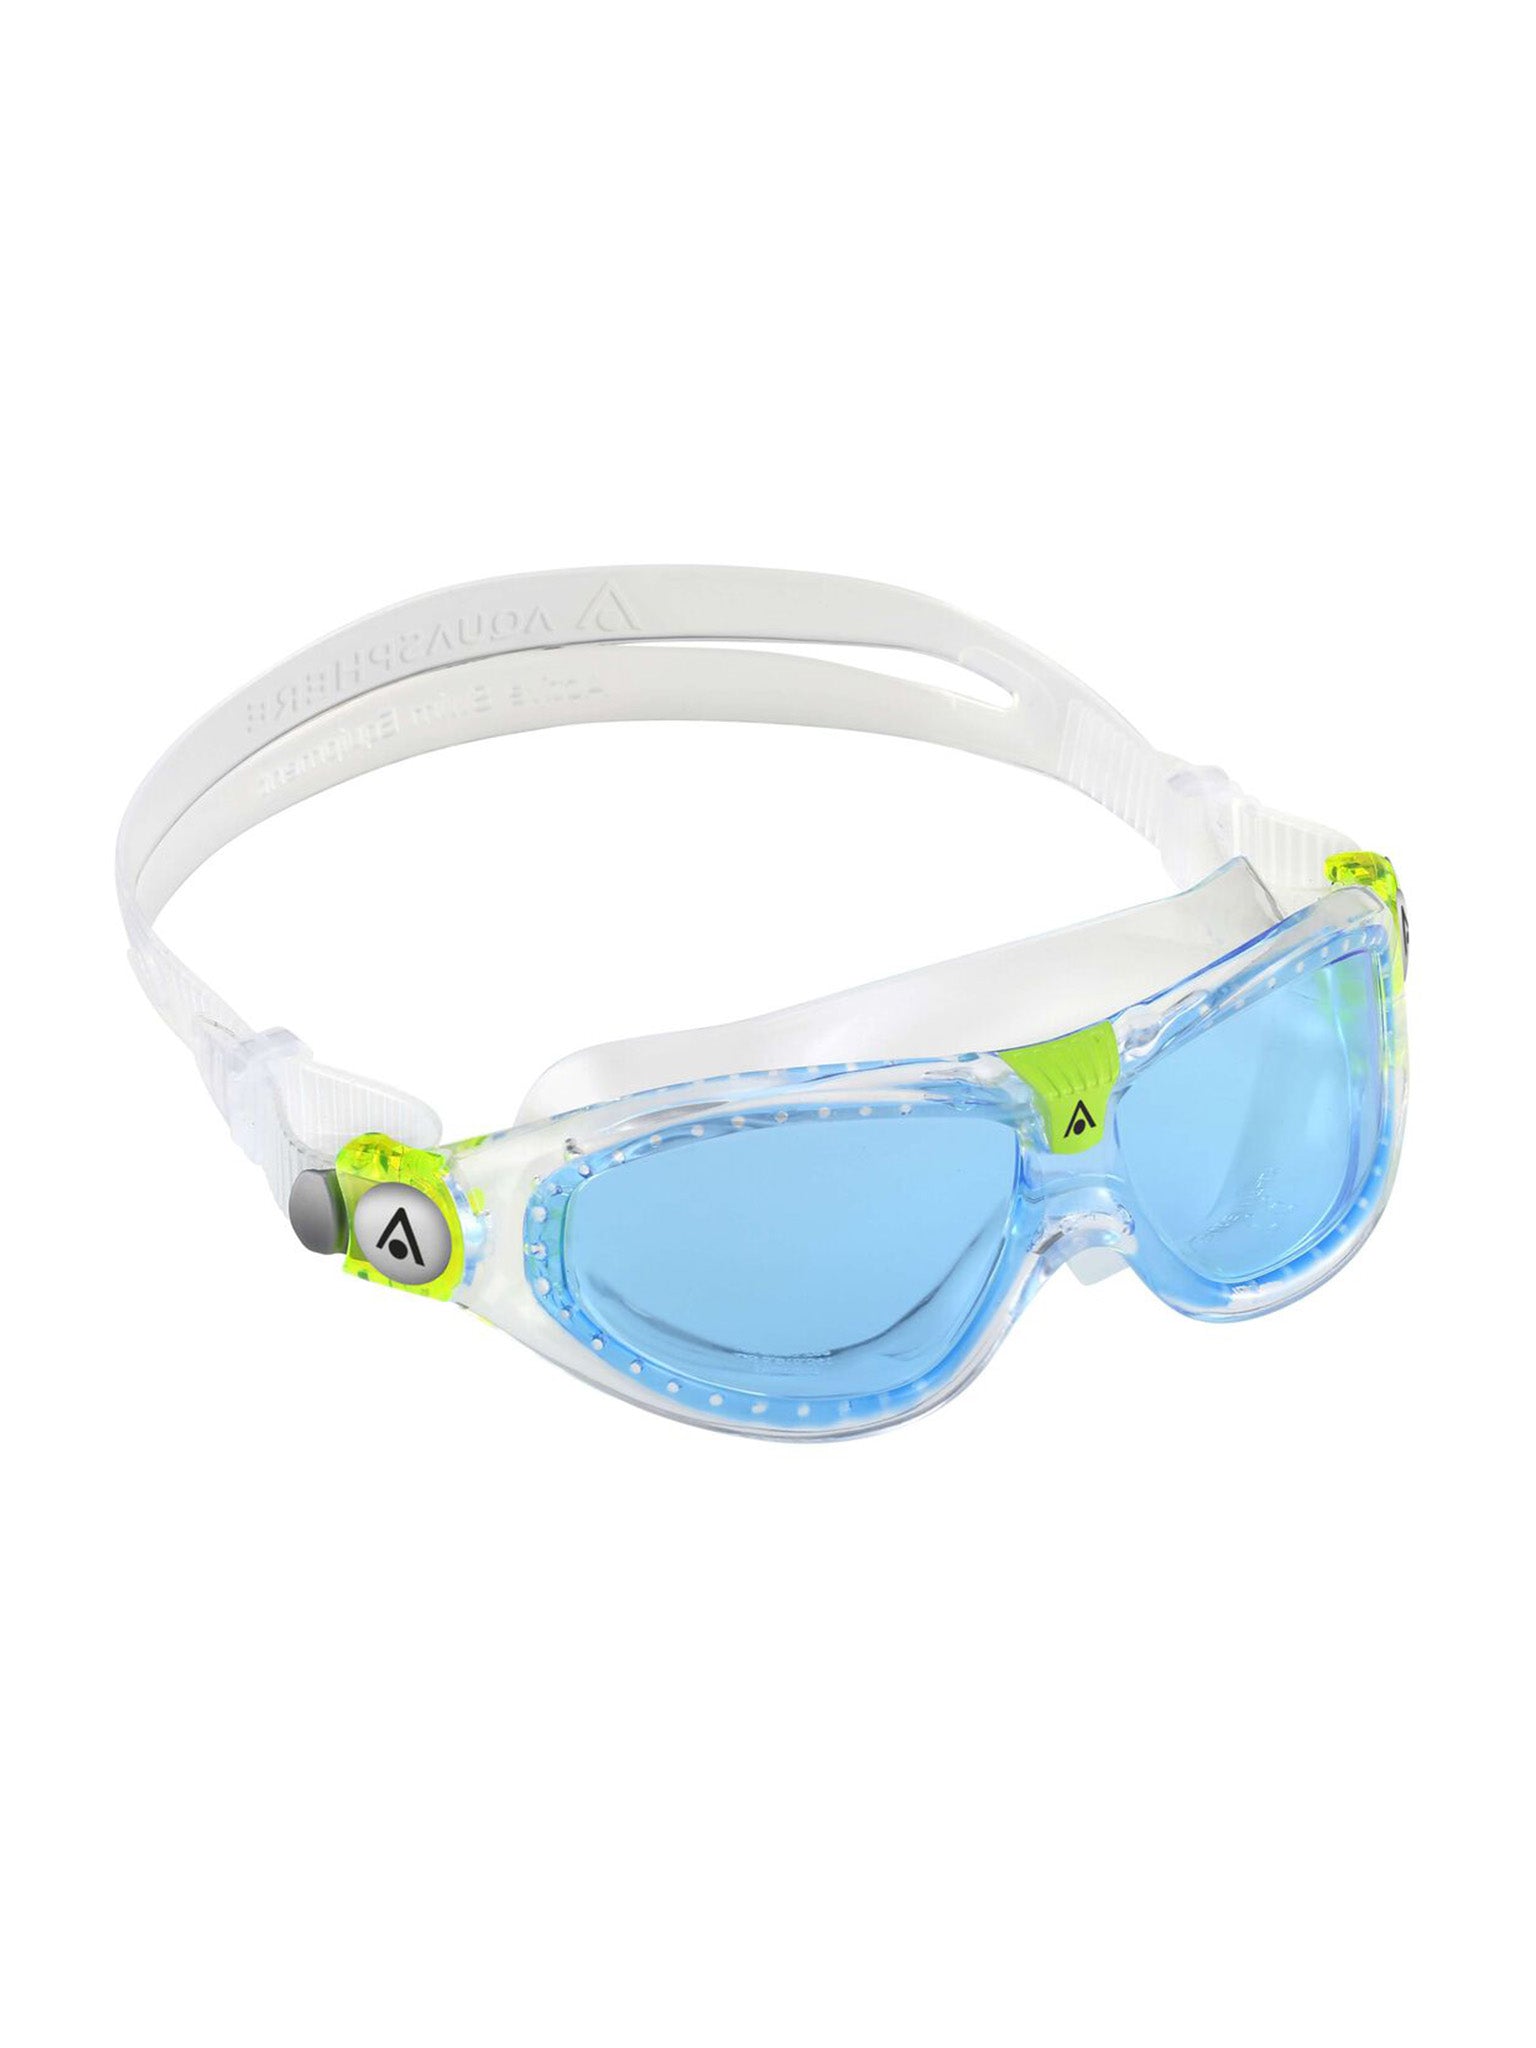 Seal Kids 2.0 Swim Goggle